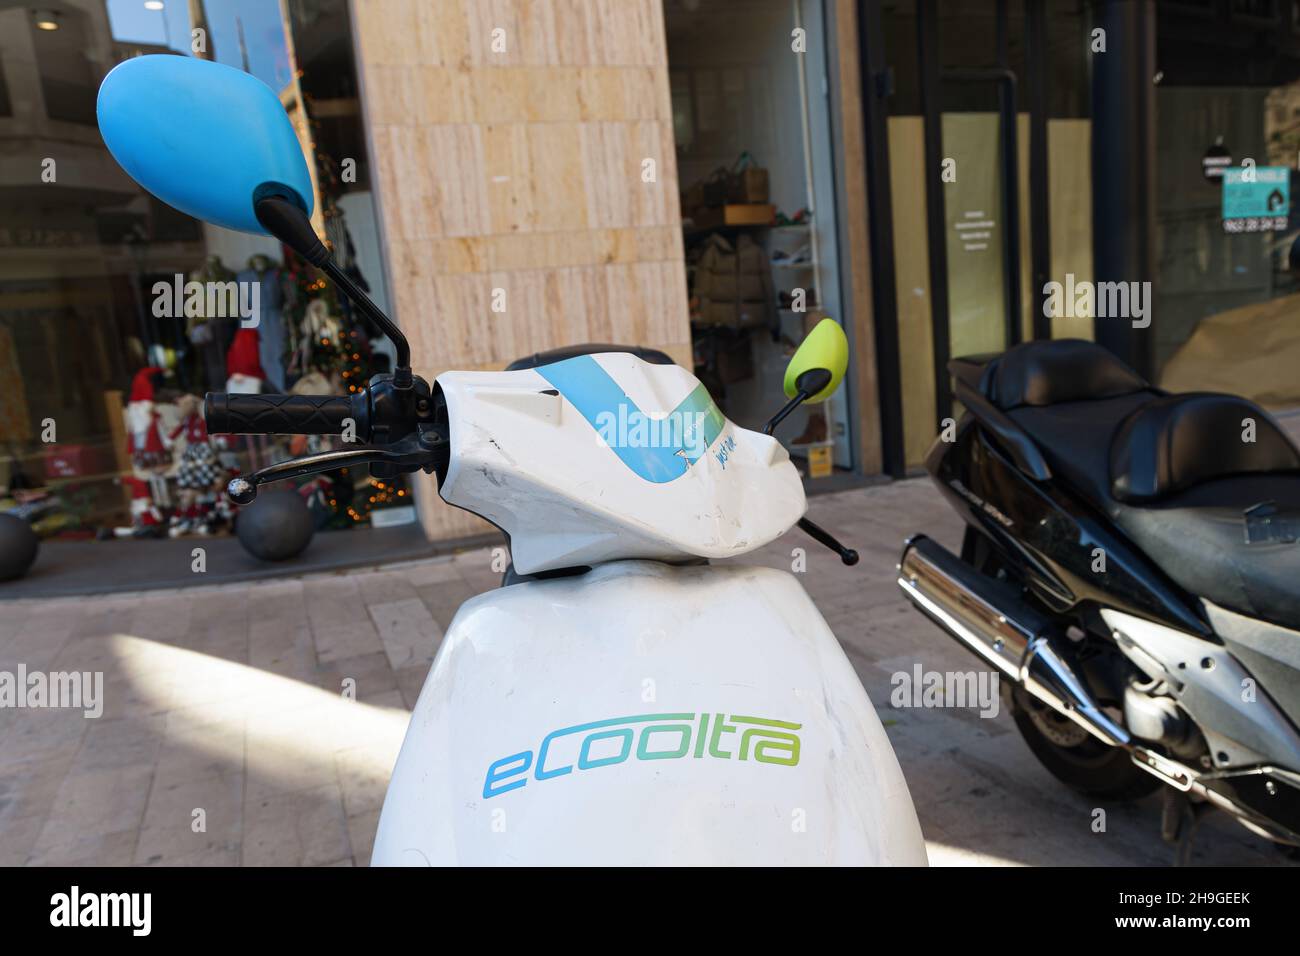 VALENCIA, SPAGNA - 05 DICEMBRE 2021: Sistema di condivisione moto elettrico. ECooltra Company Foto Stock